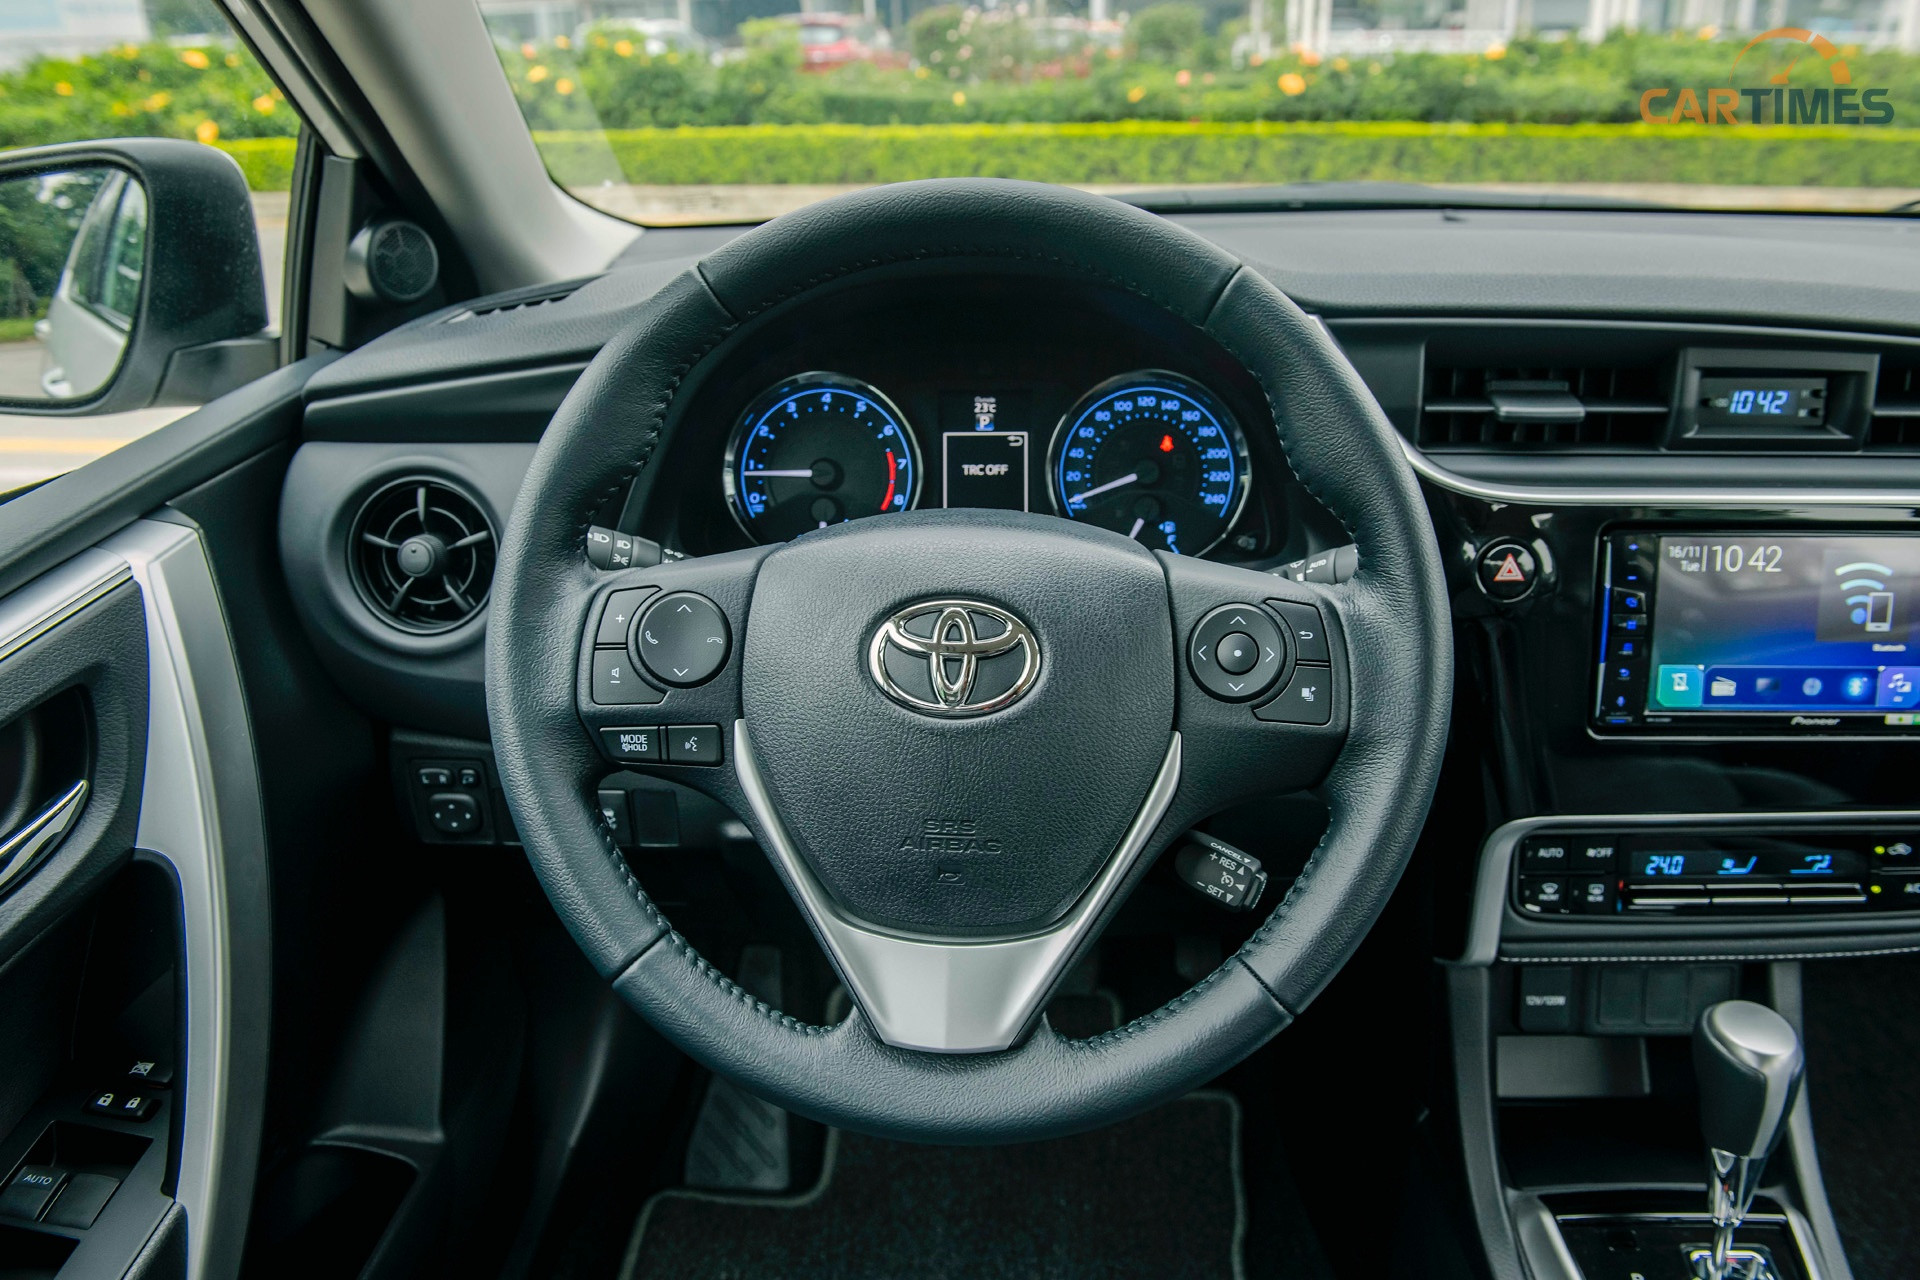 Vô lăng xe Toyota Corolla Altis tích hợp nhiều tính năng